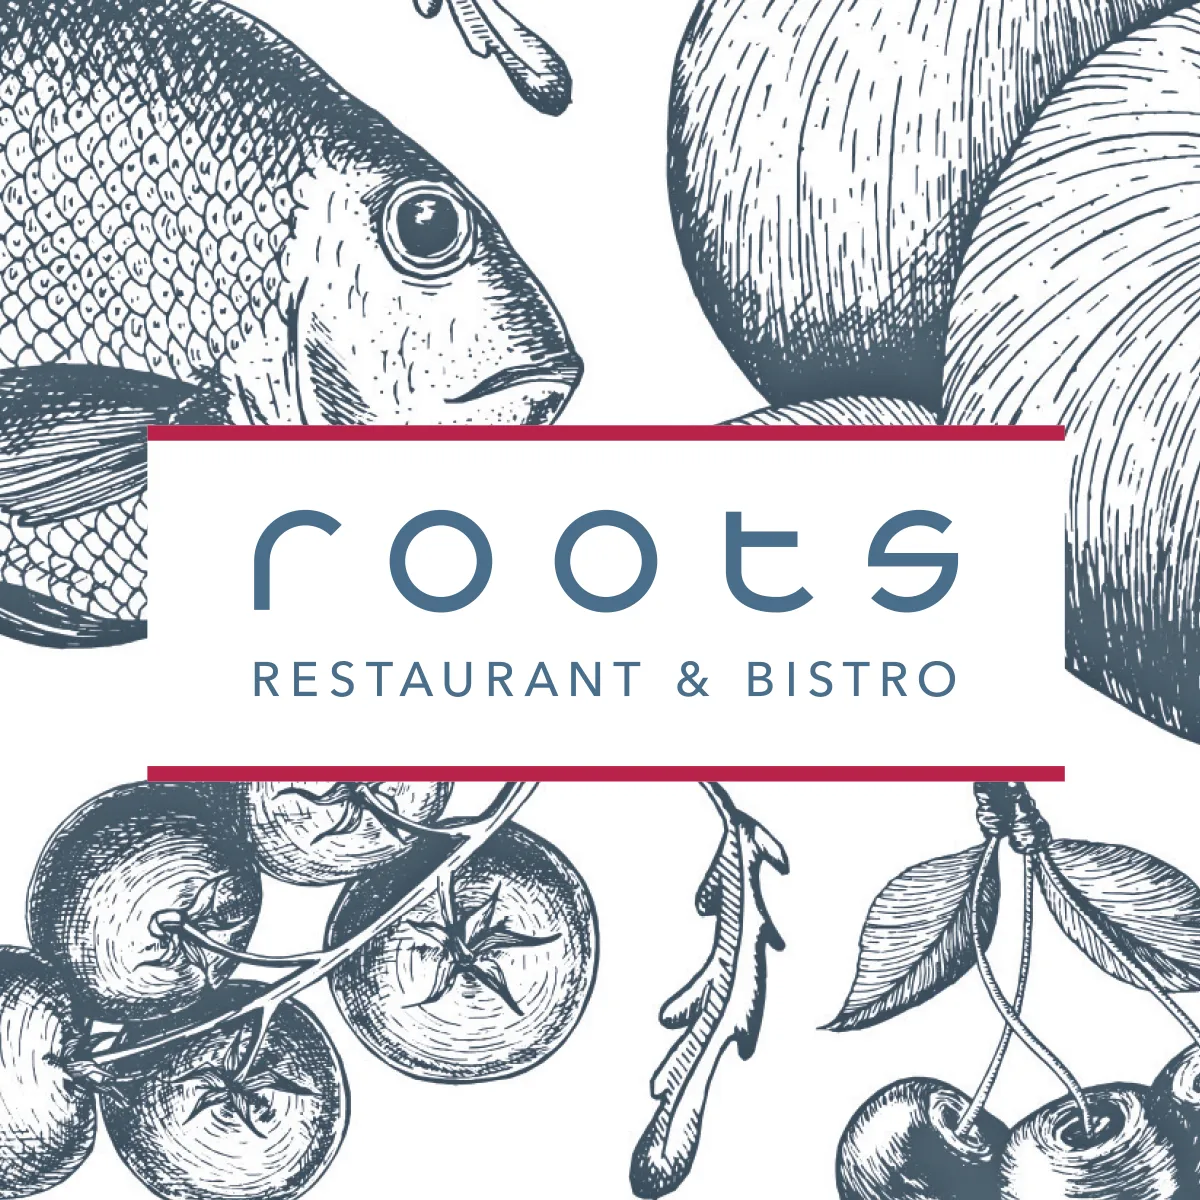 roots Restaurant & Bistro – Wortbildmarke und Key Visual